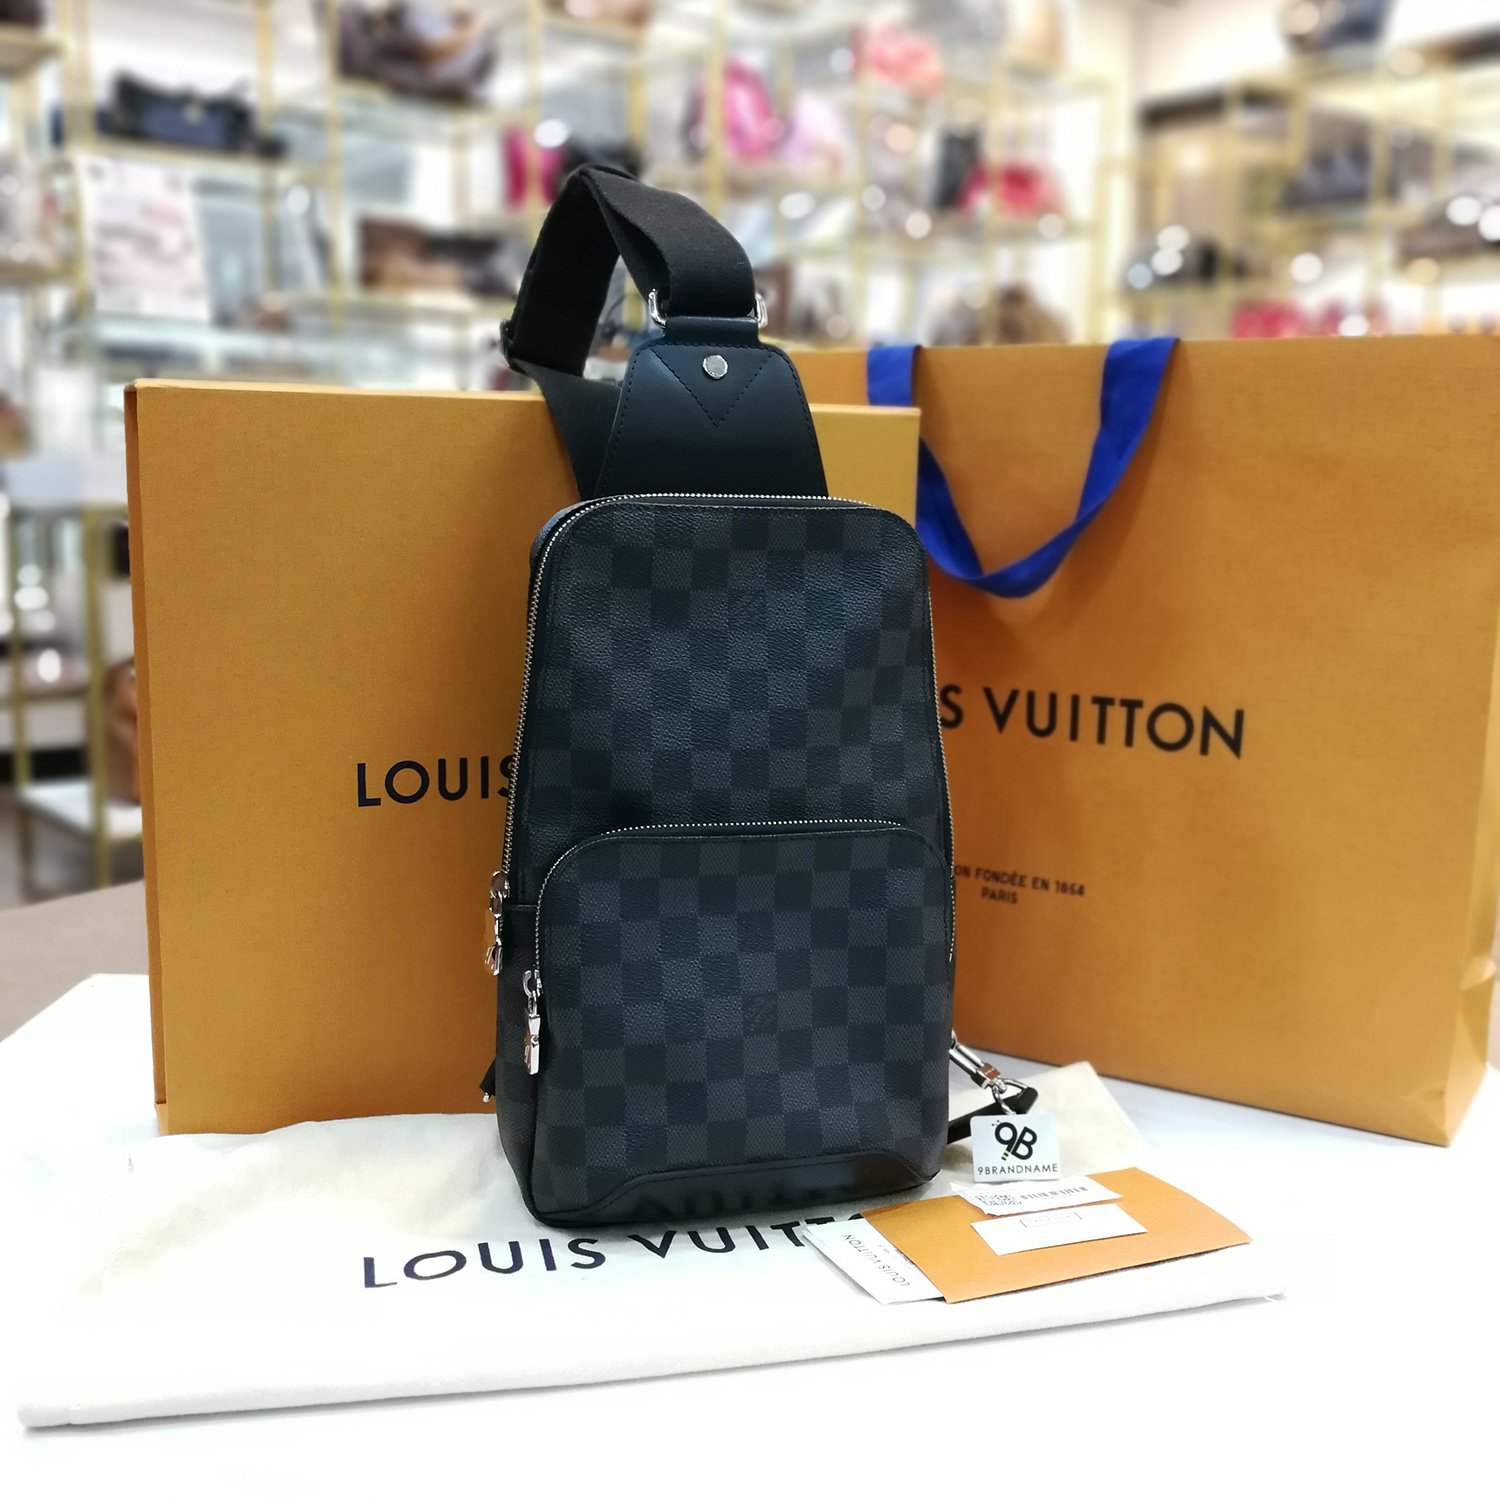 ) Louis Vuitton AVENUE Sling Bag Damier Graphite Canvas N41719